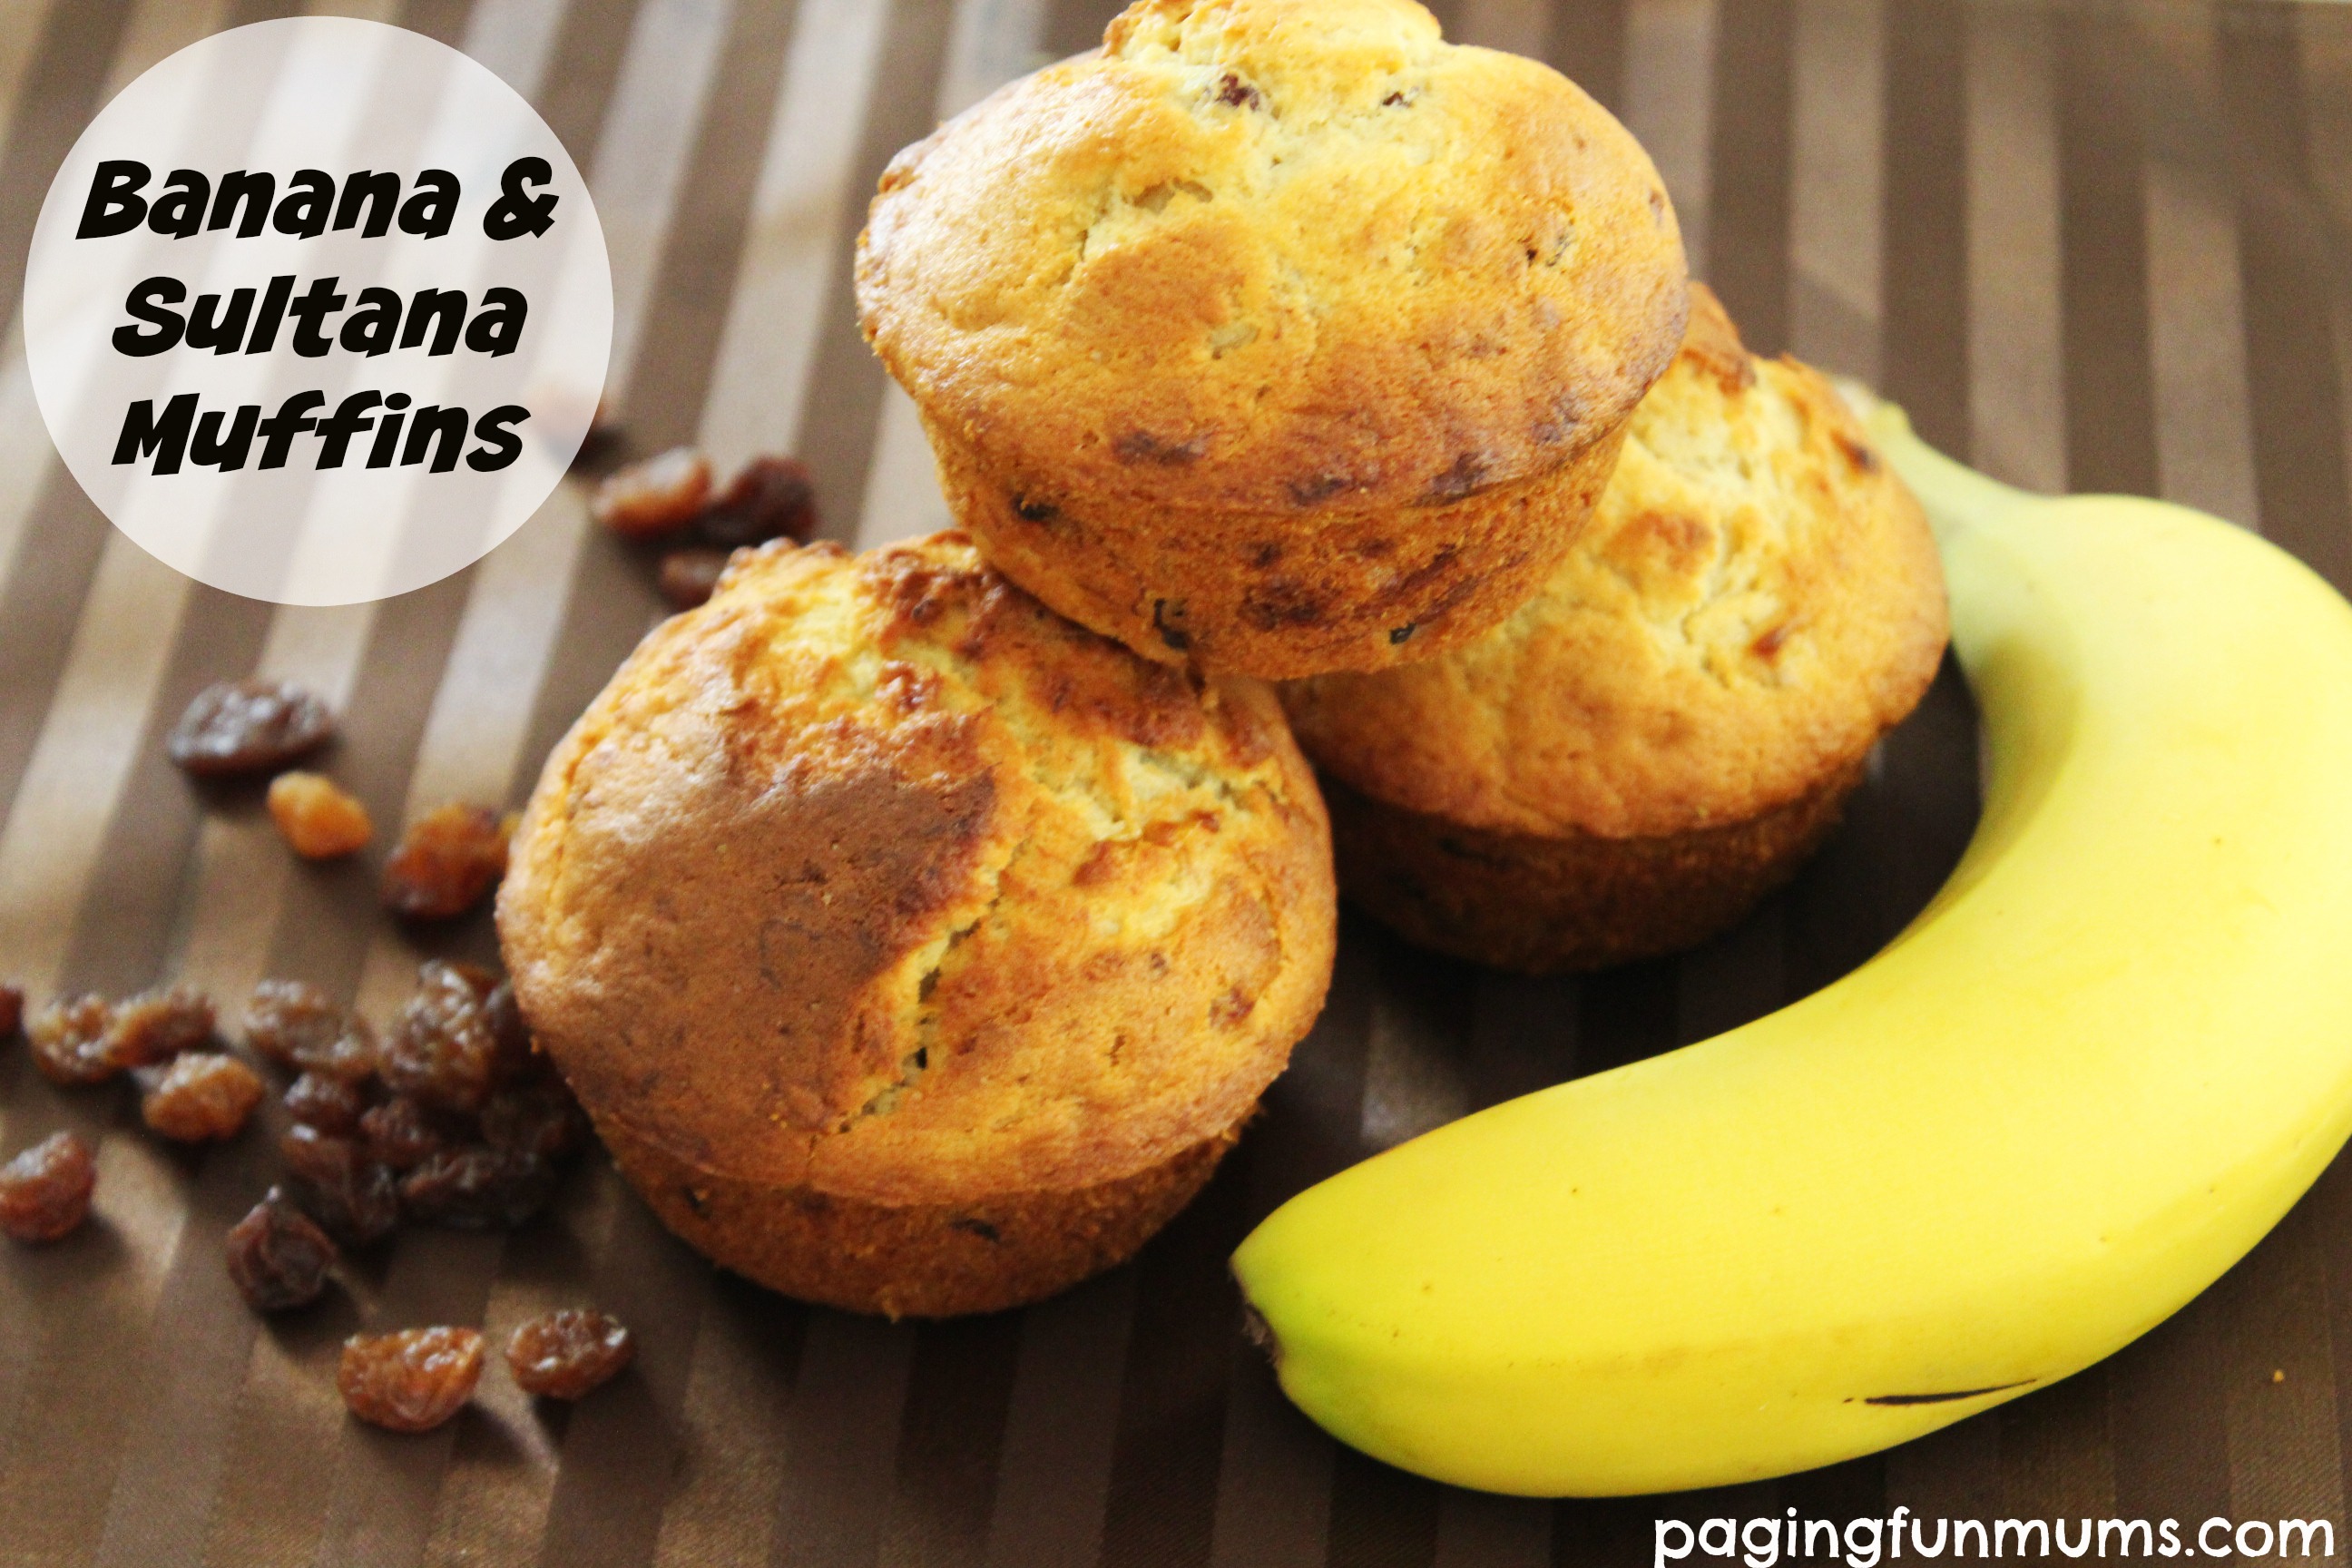 Banana & Sultana Muffins